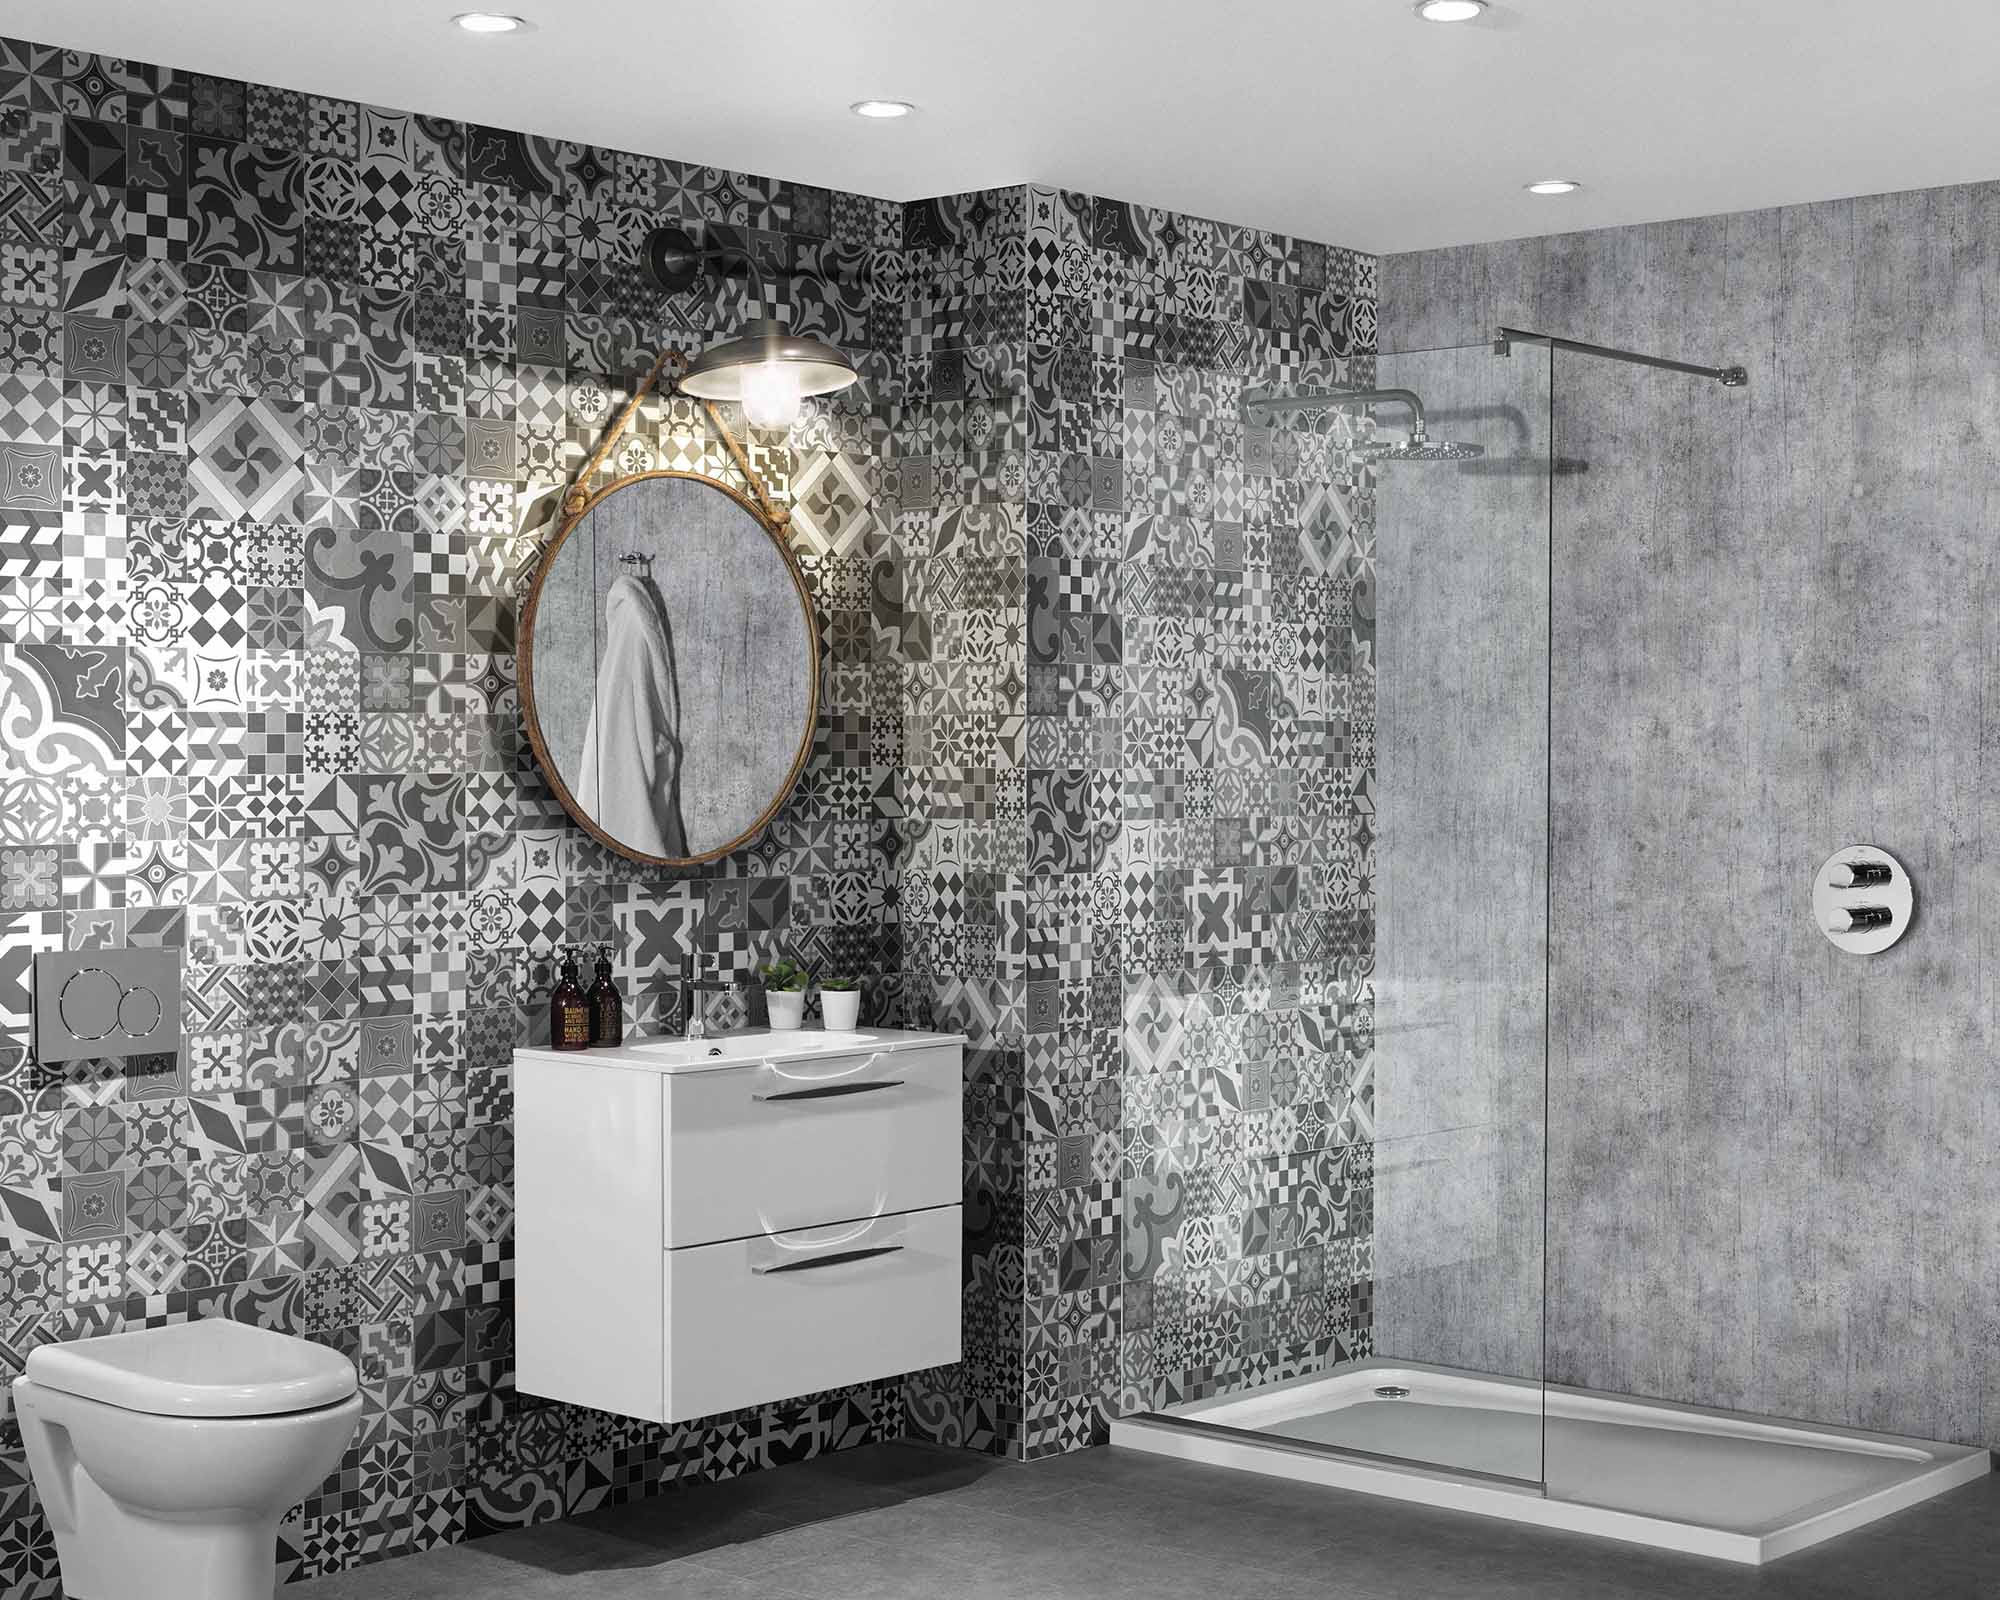 Grey printed bathroom tile panels by Mermaid Panels